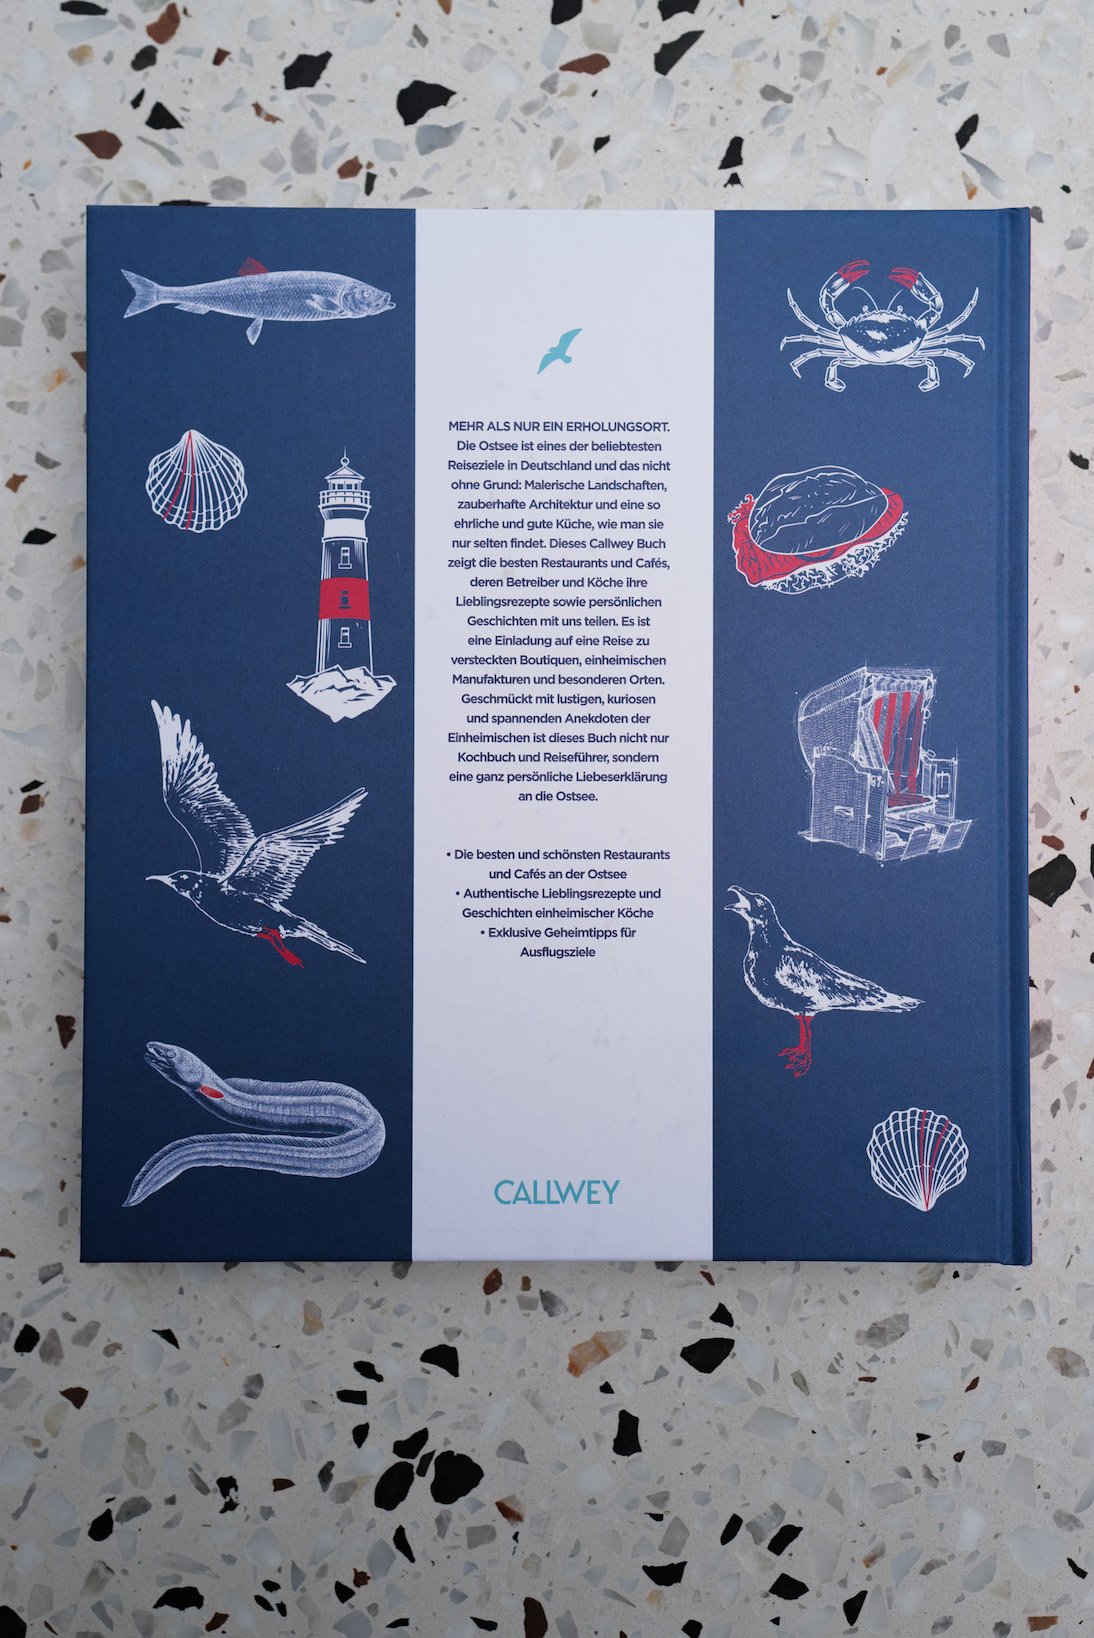 Callwey Verlag Buchvorstellung Zu Gast an der Ostsee 